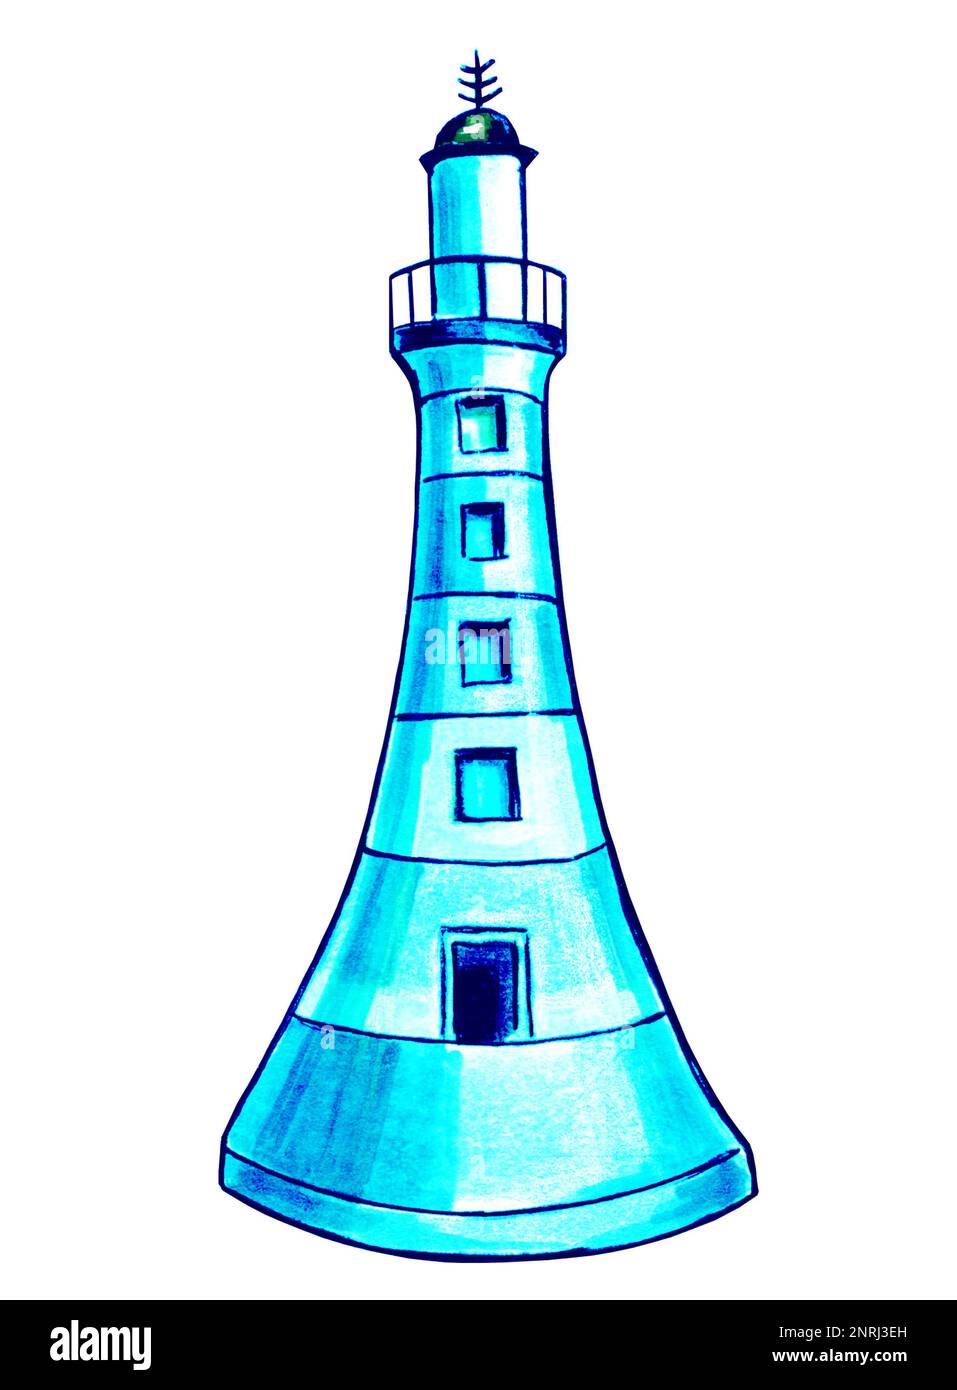 Leuchtturm in Aquafarbe. JPEG-Darstellung der Unterwasserwelt. Stockfoto